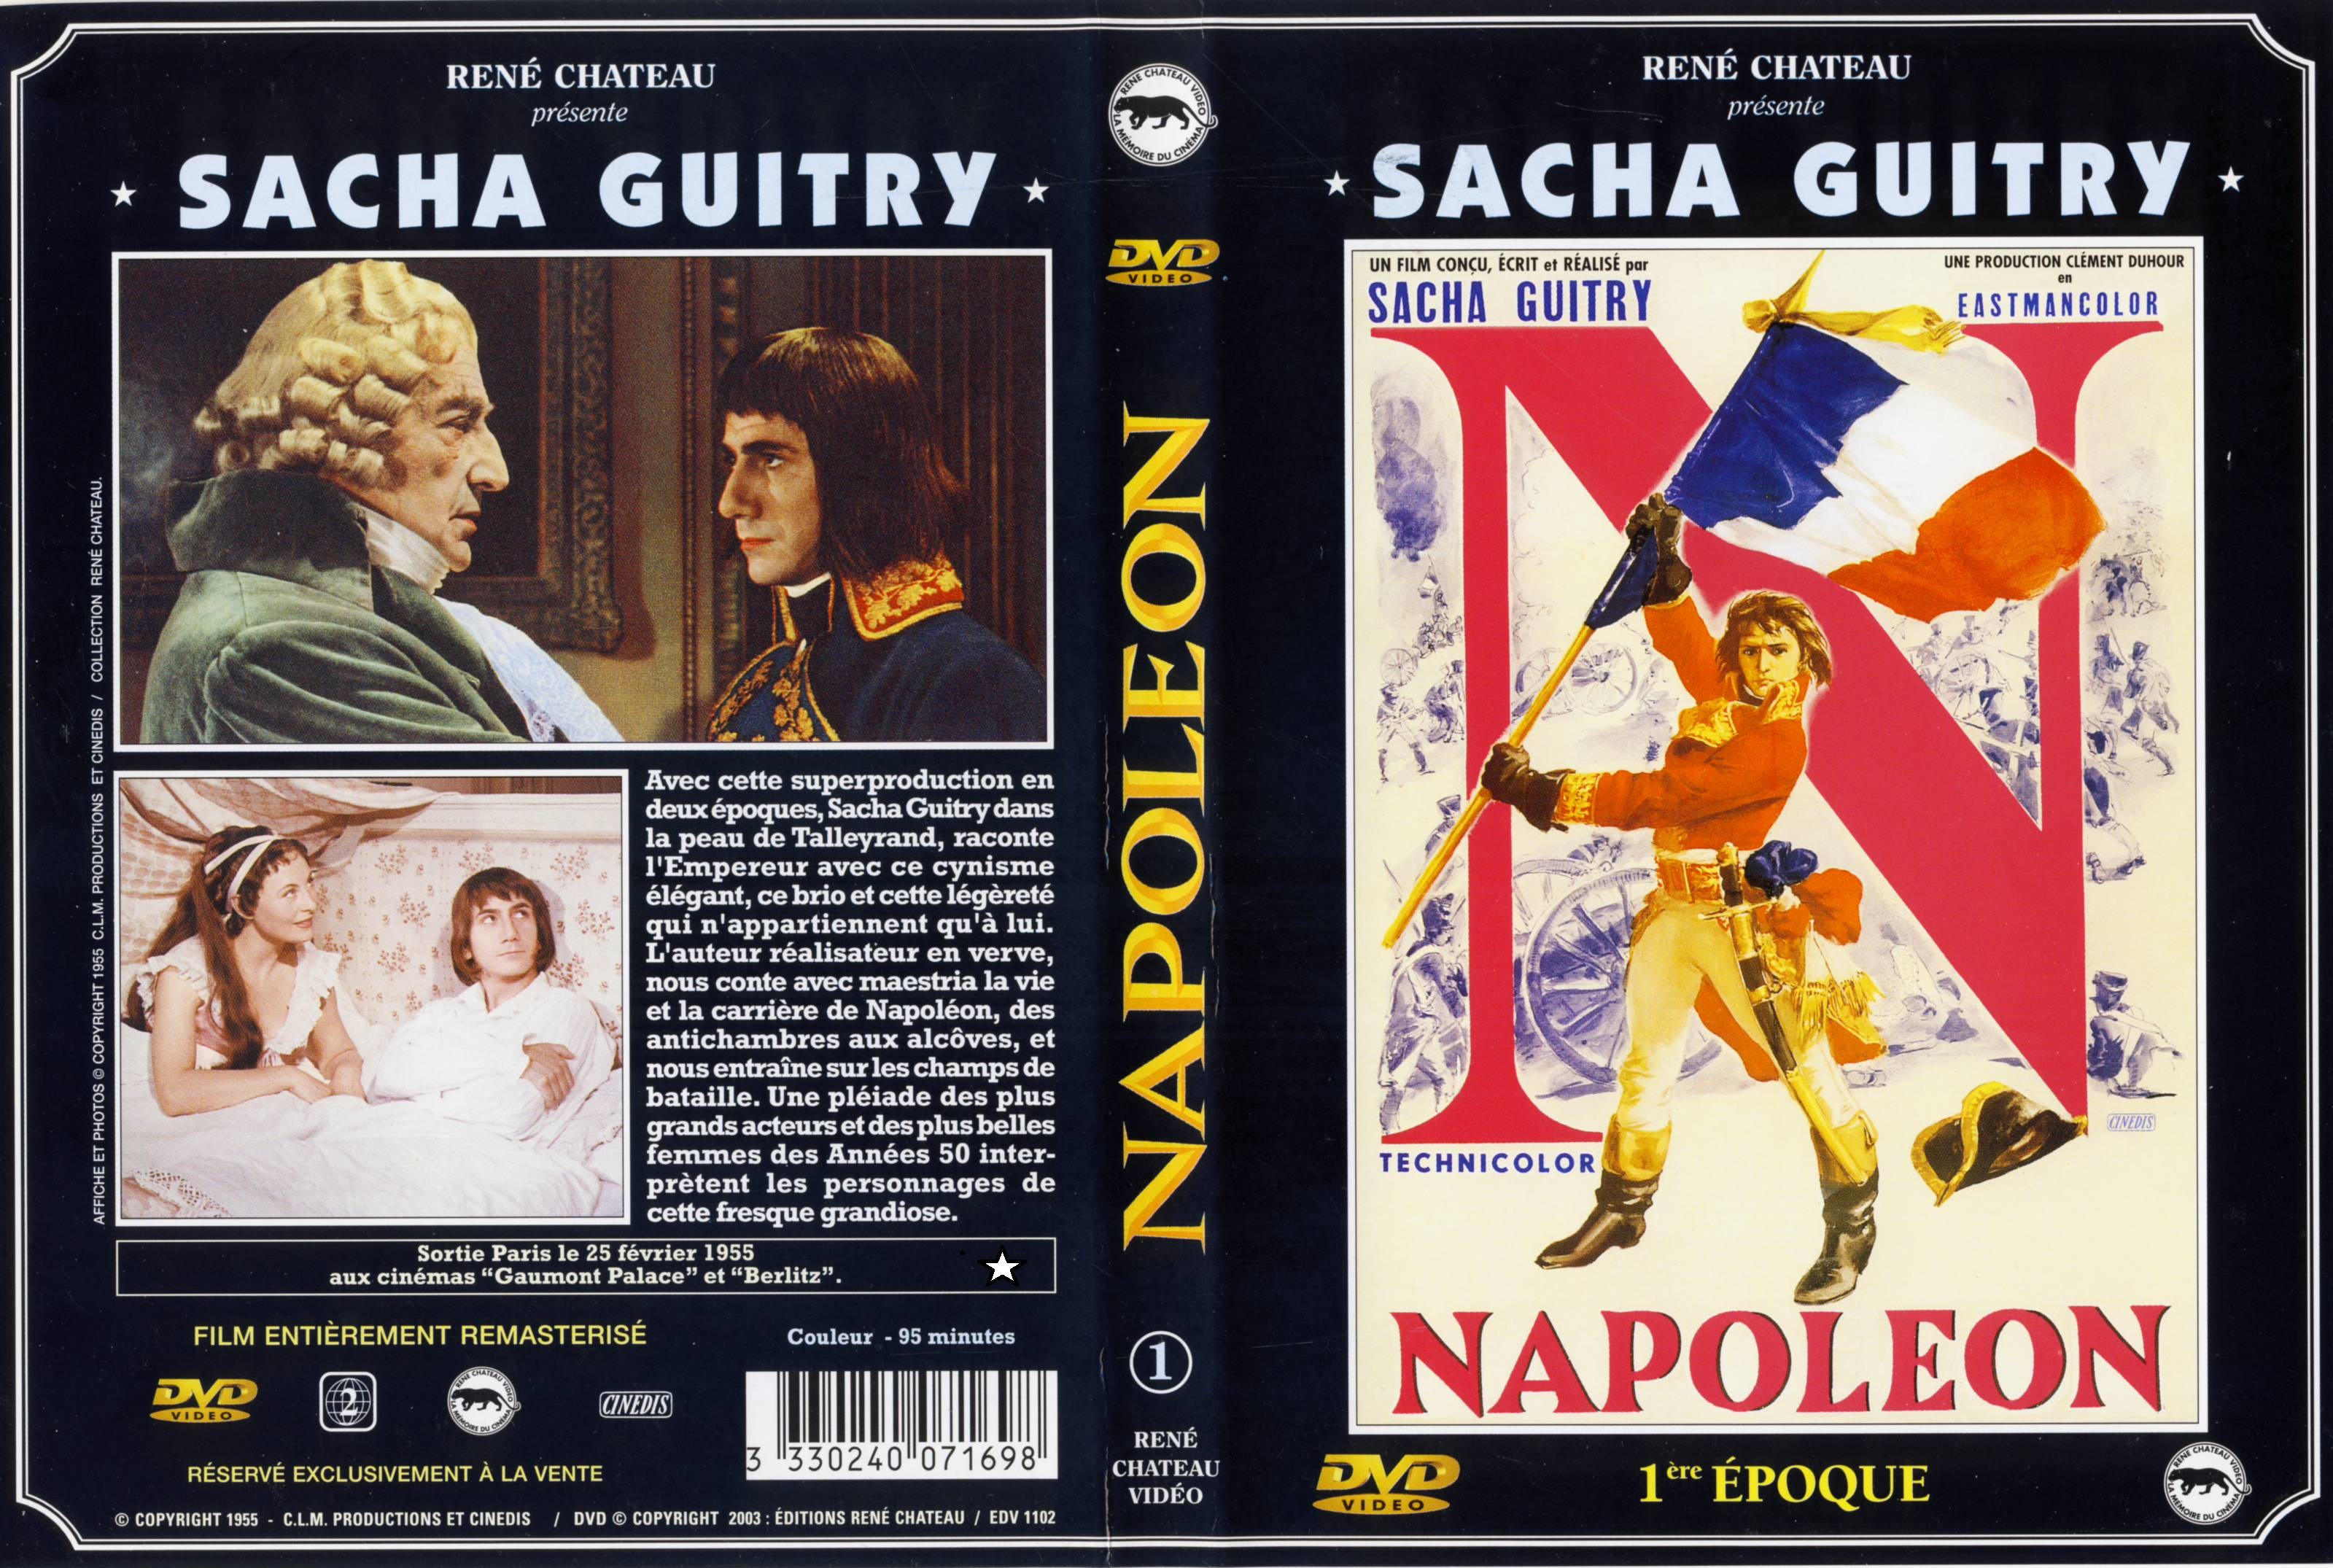 Jaquette DVD Napolon 1re poque